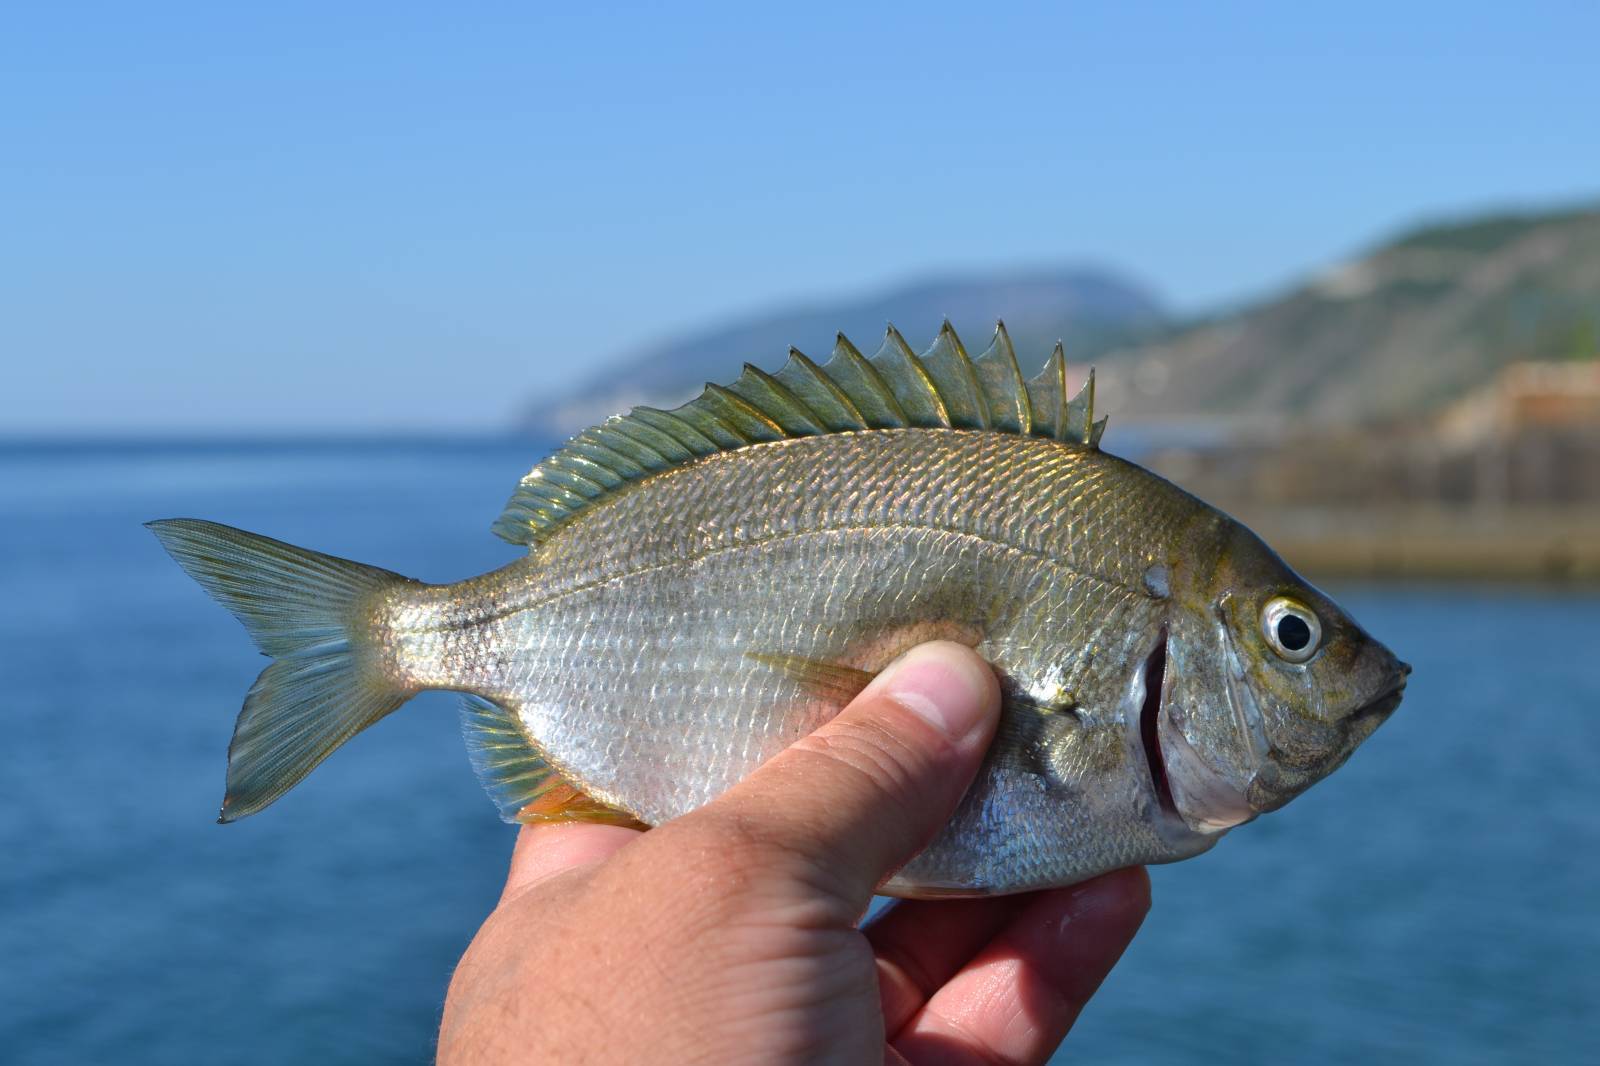 рыбы черного моря названия и фото